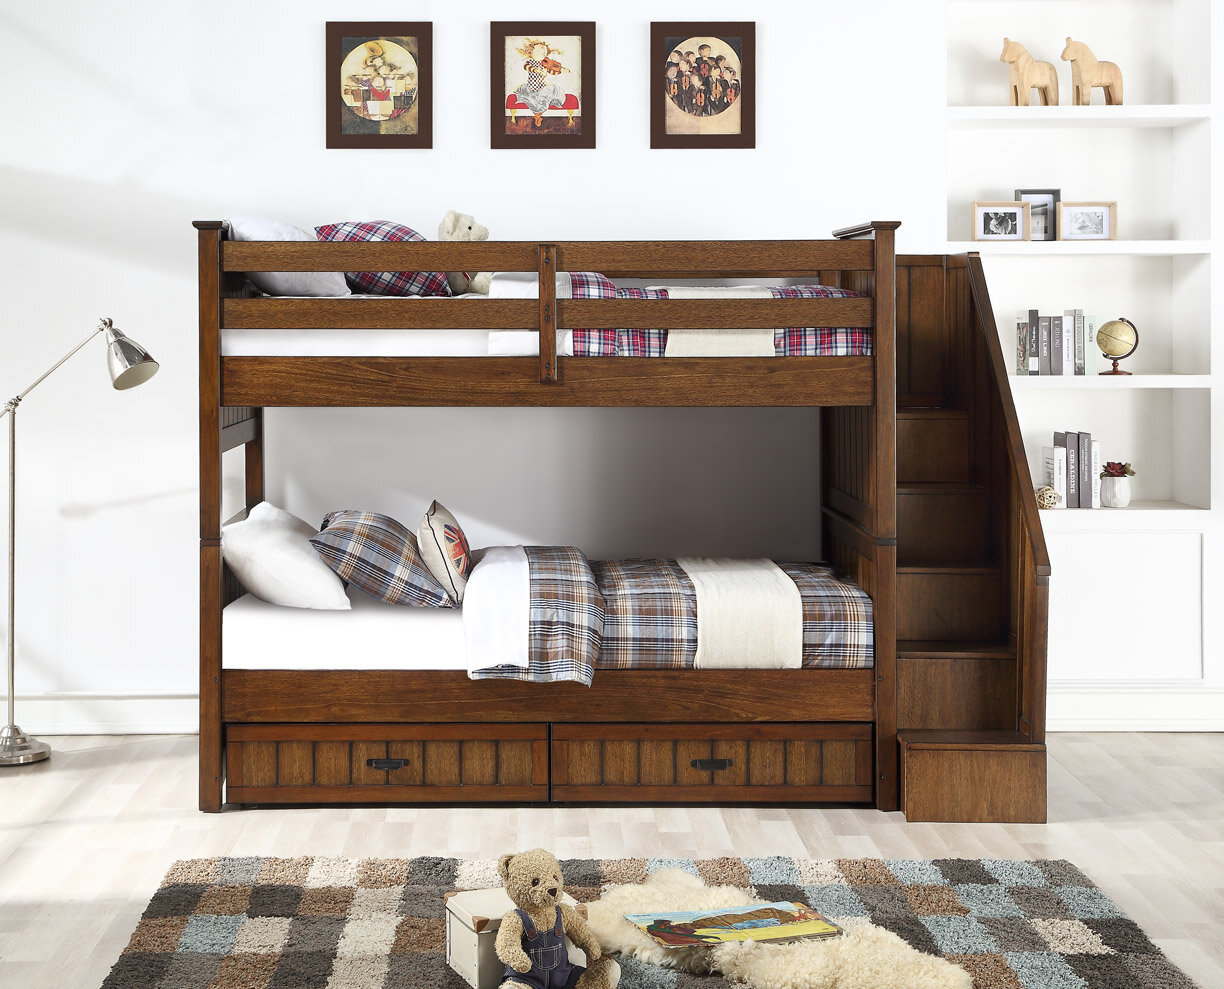 Caramia Furniture Bunk Beds, Simmons Tristan Bunk Bed Instructions